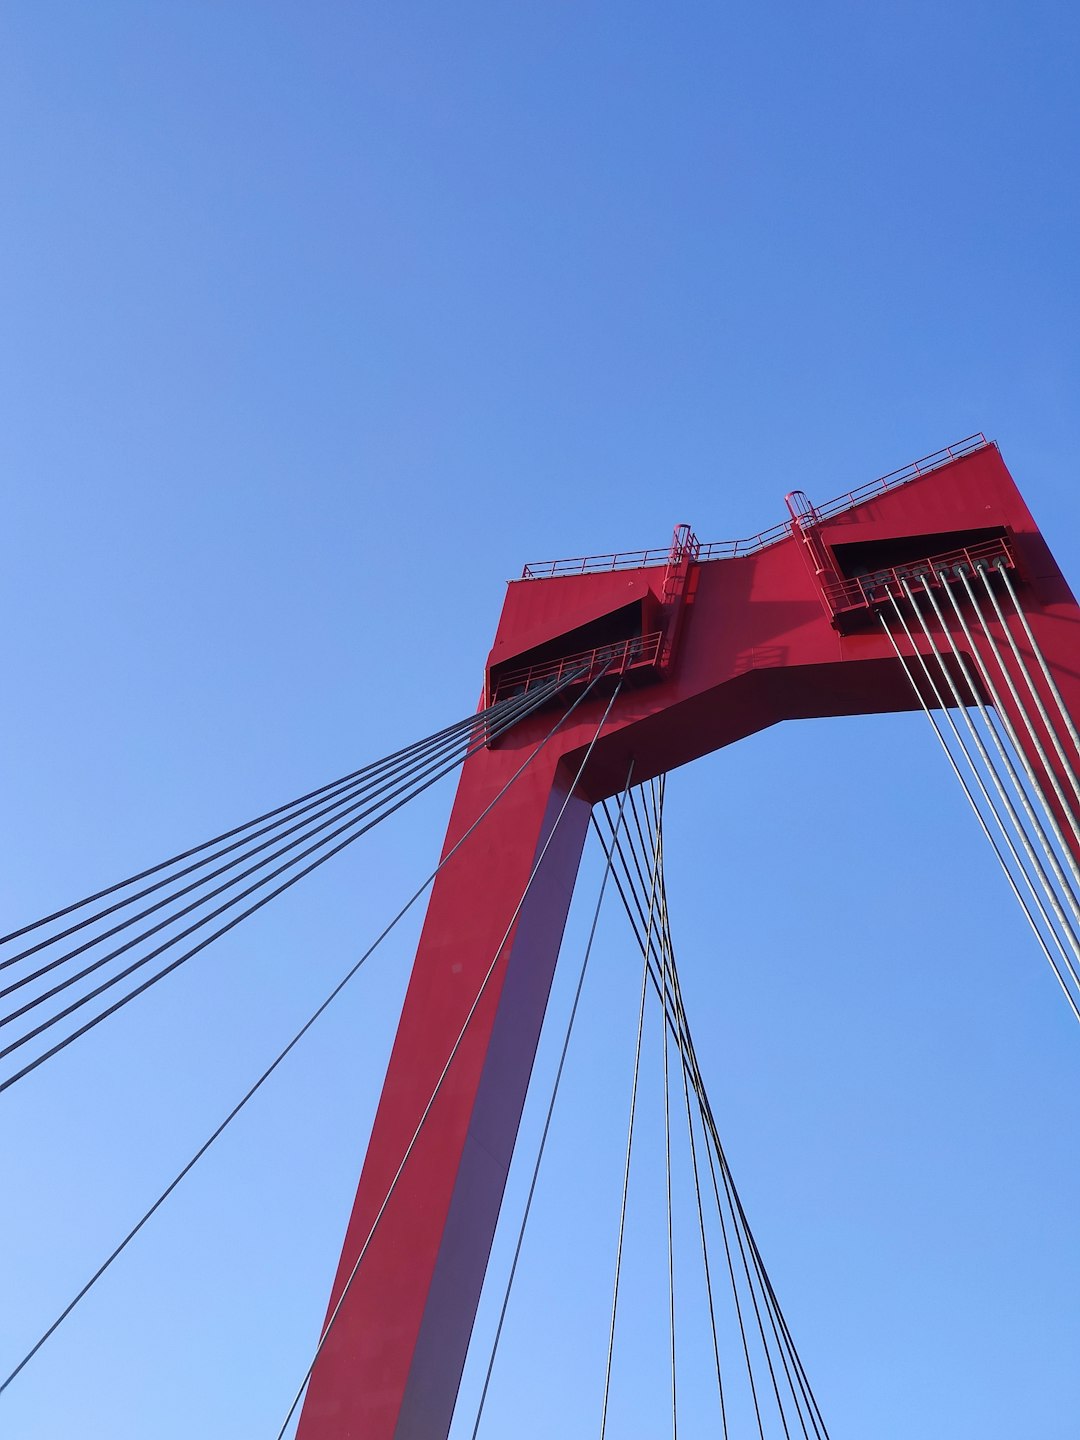 Suspension bridge photo spot Willemsbrug Netherlands